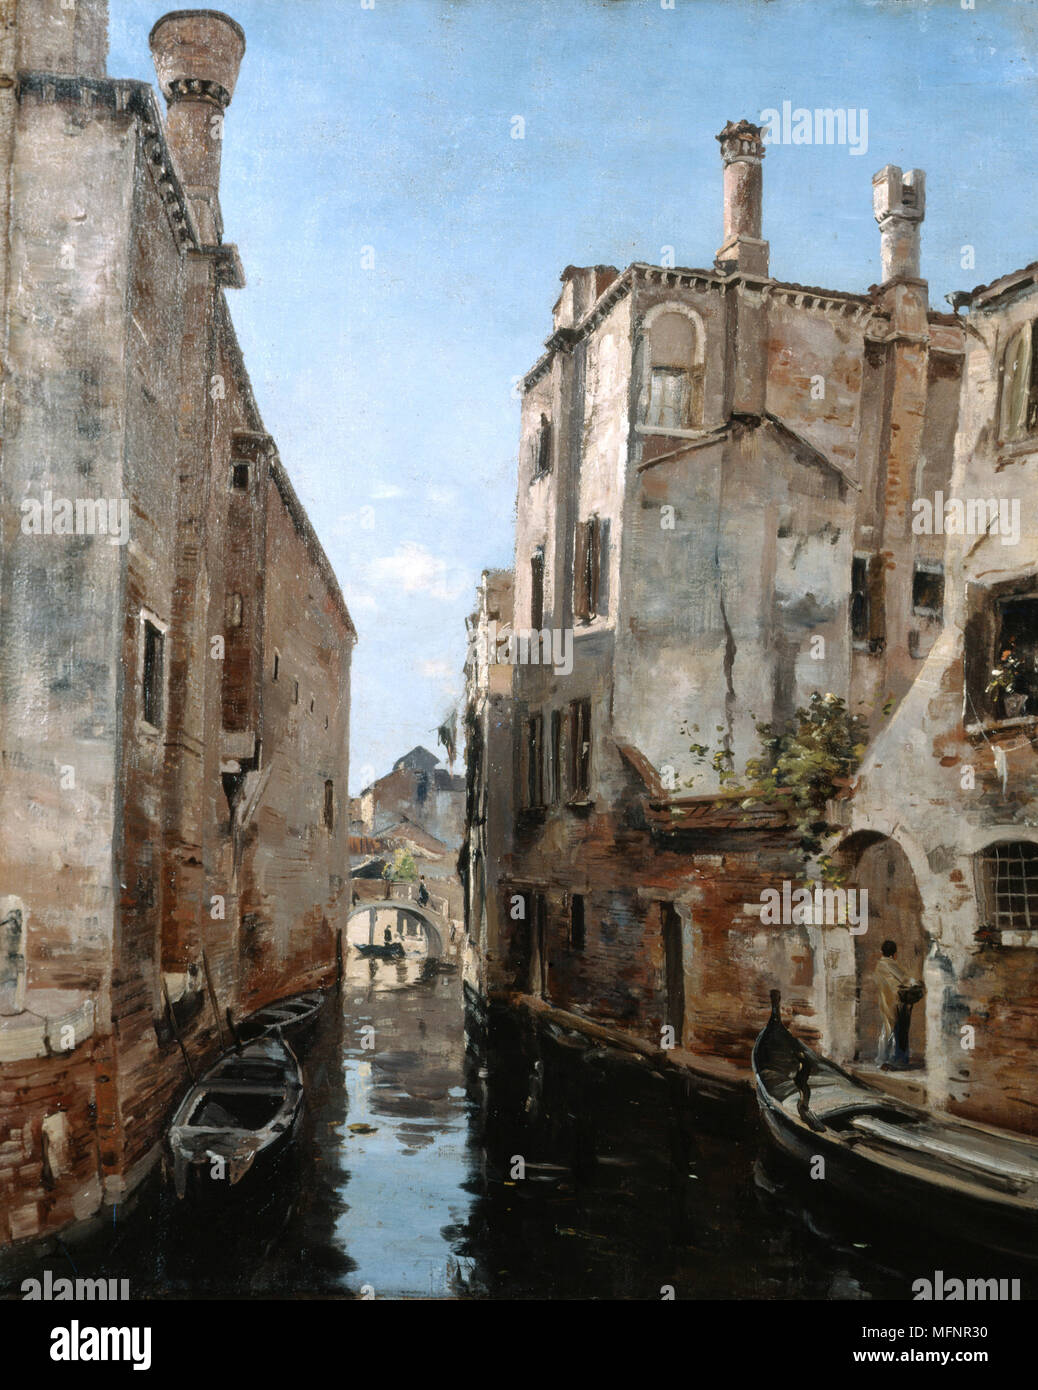 Venise, près de l'église de Saint Sébastien, 1892. Huile sur toile. Emmanuel Lansyer (1835-1893), peintre paysagiste français. Italie Canal Boat House Garden Wall Banque D'Images